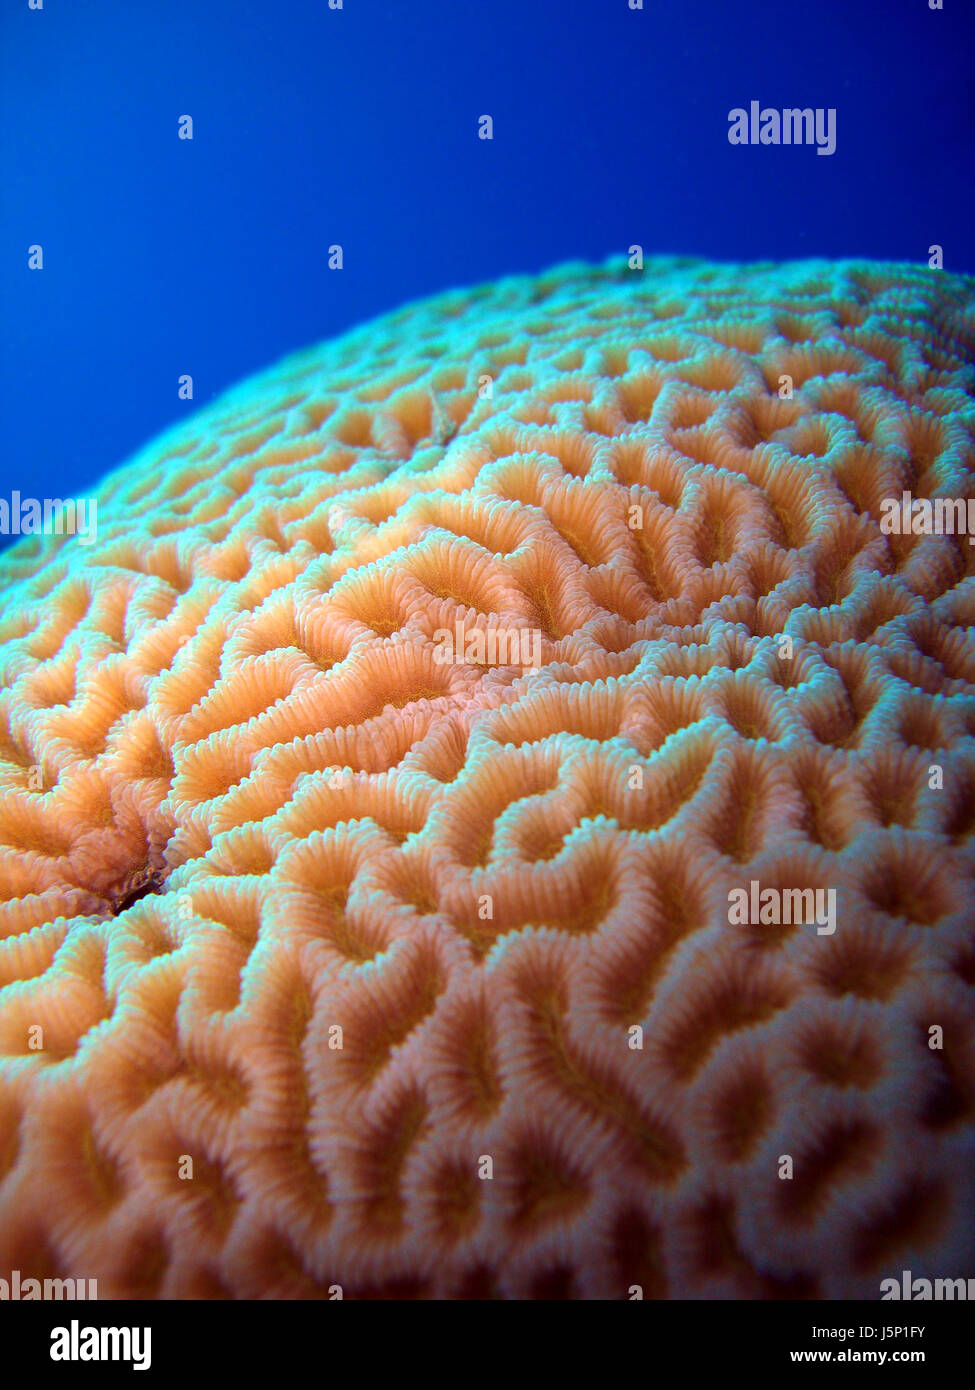 Animali spinelessly acqua salata oceano mare coralli acqua paesaggi della natura degli animali Foto Stock